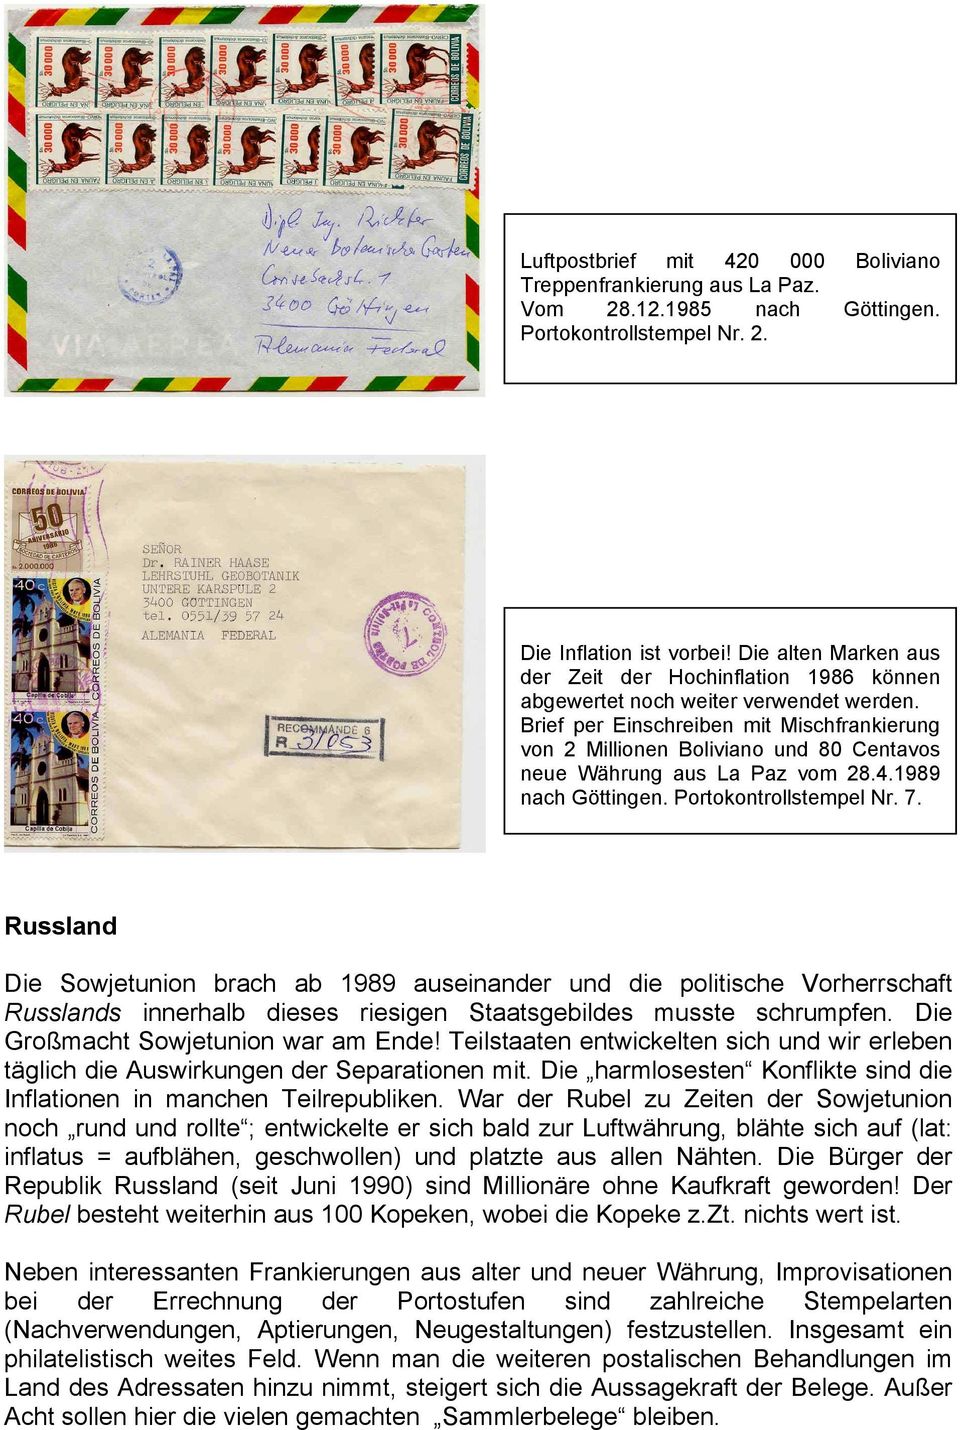 Brief per Einschreiben mit Mischfrankierung von 2 Millionen Boliviano und 80 Centavos neue Währung aus La Paz vom 28.4.1989 nach Göttingen. Portokontrollstempel Nr. 7.